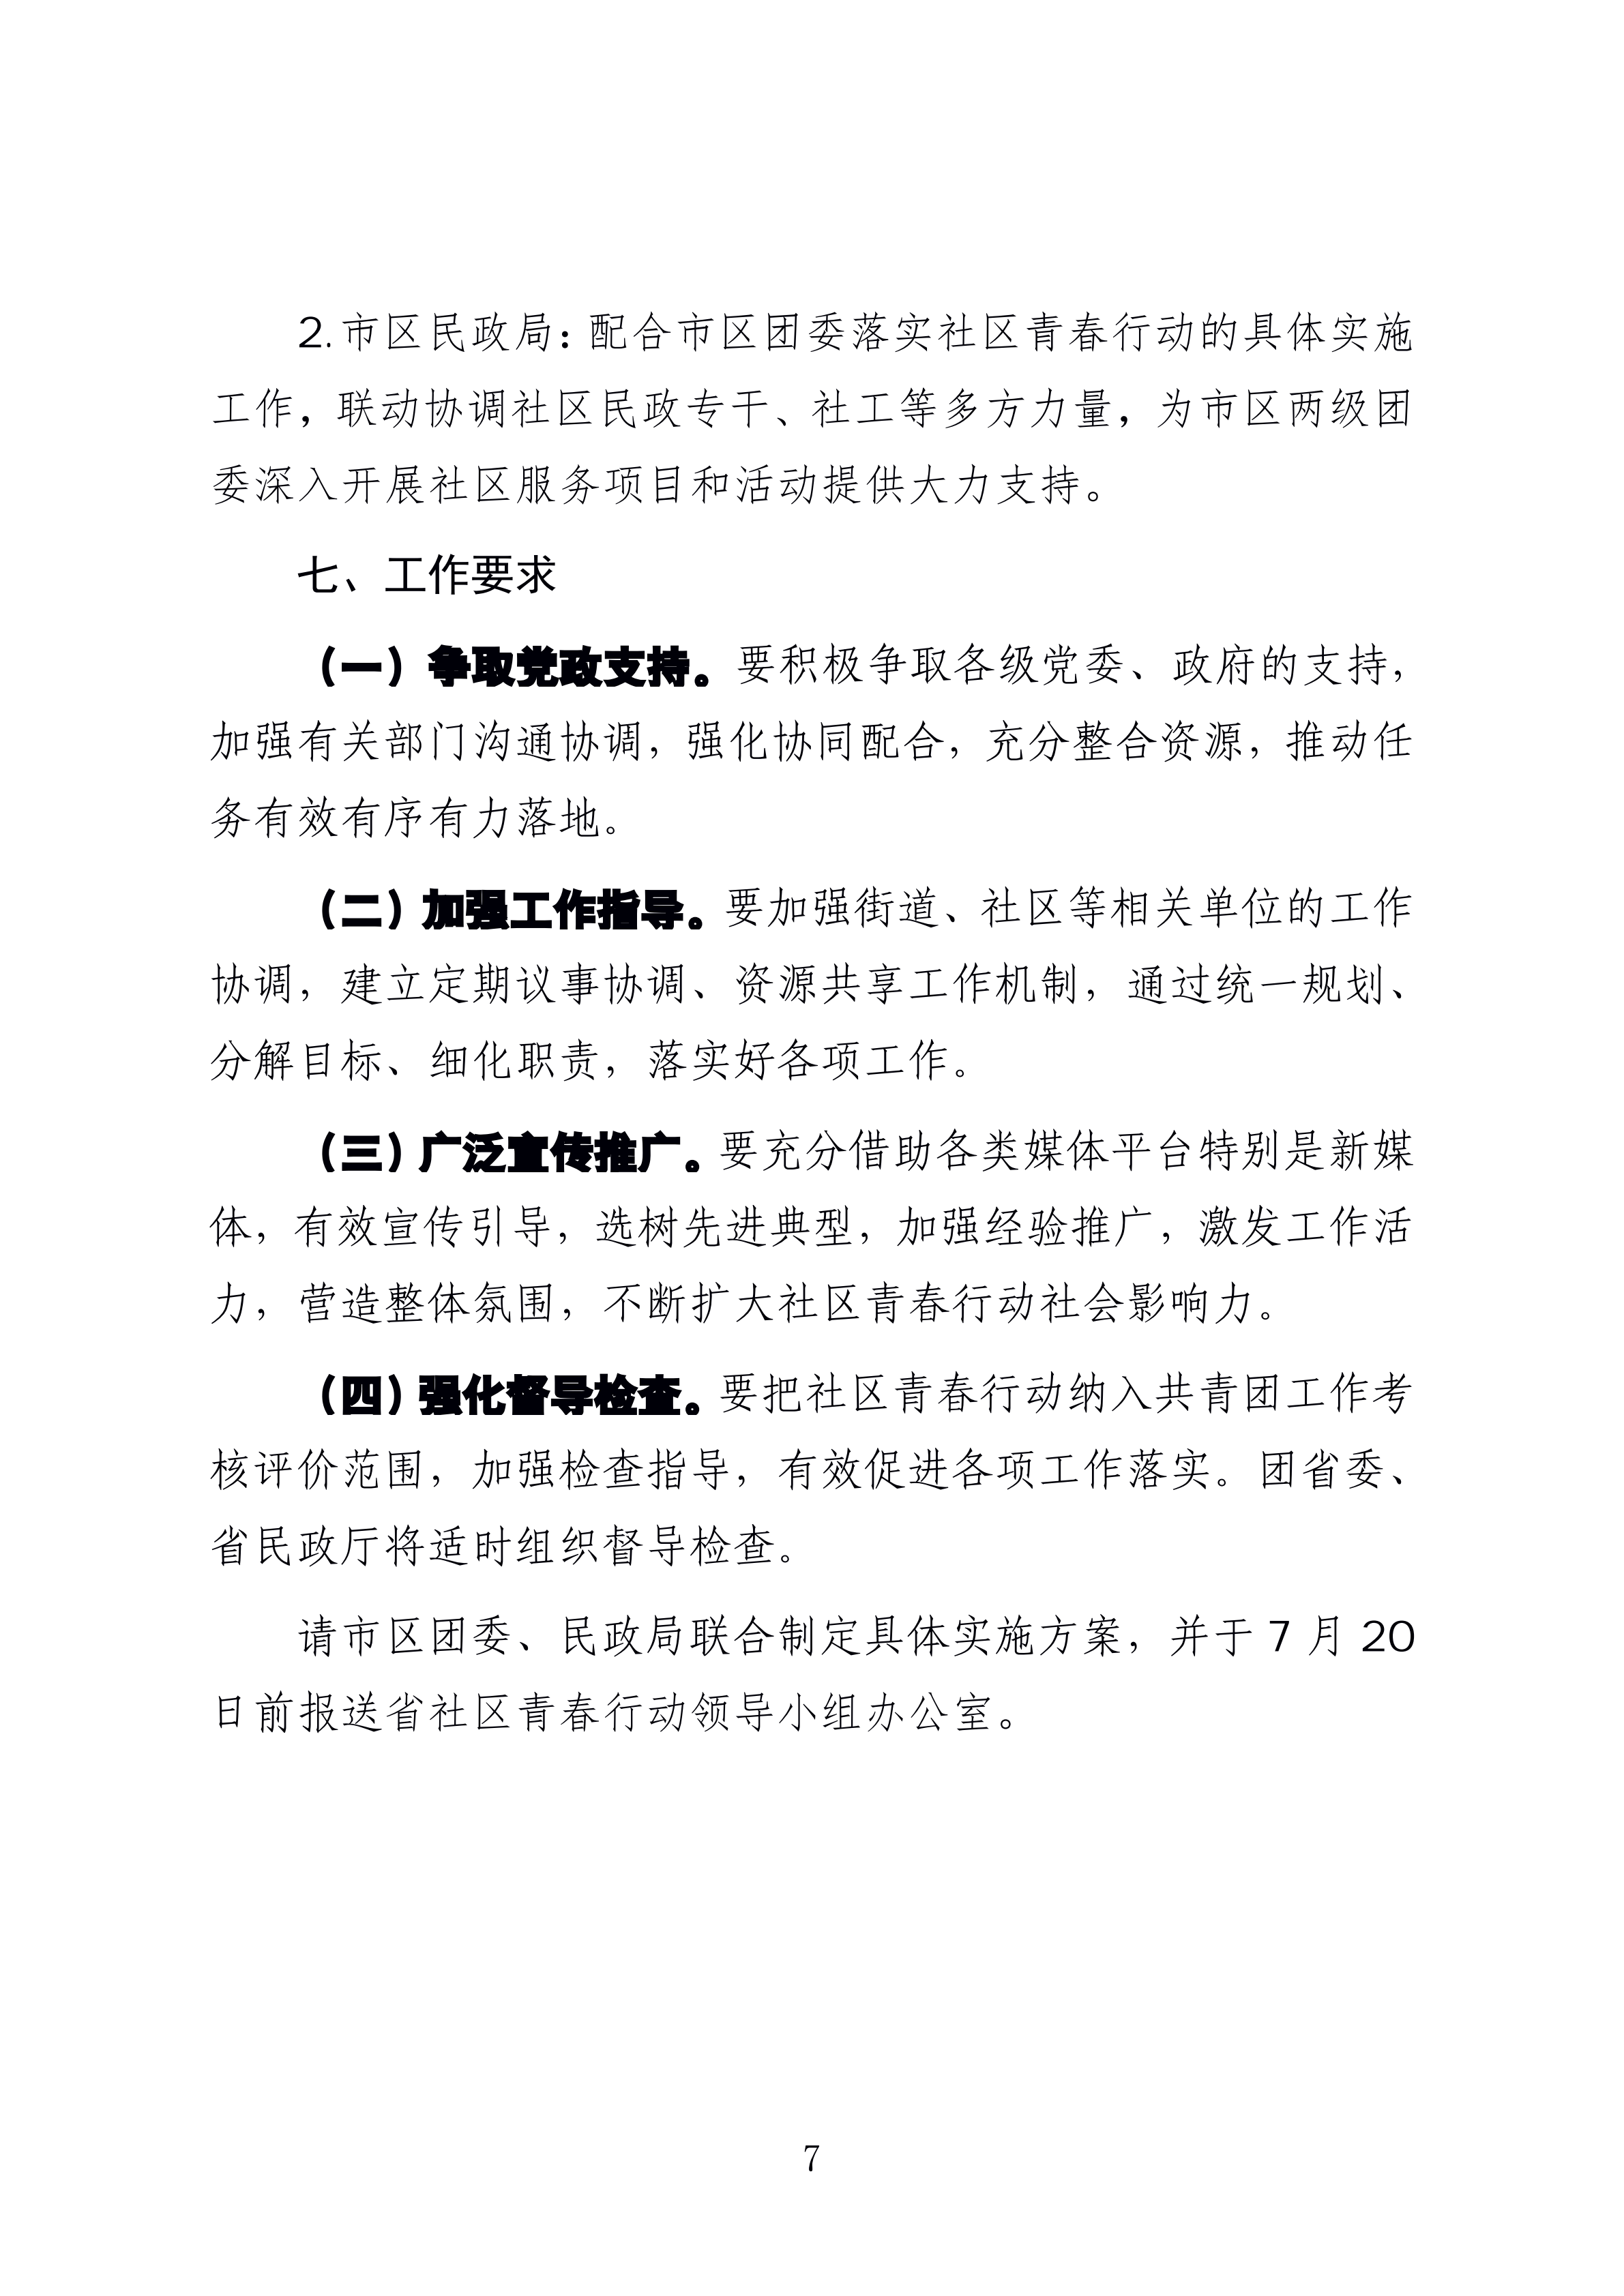 1-
  海南省民政厅 关于印发《海南省社区青春行动工作方案》 的通知_06.png